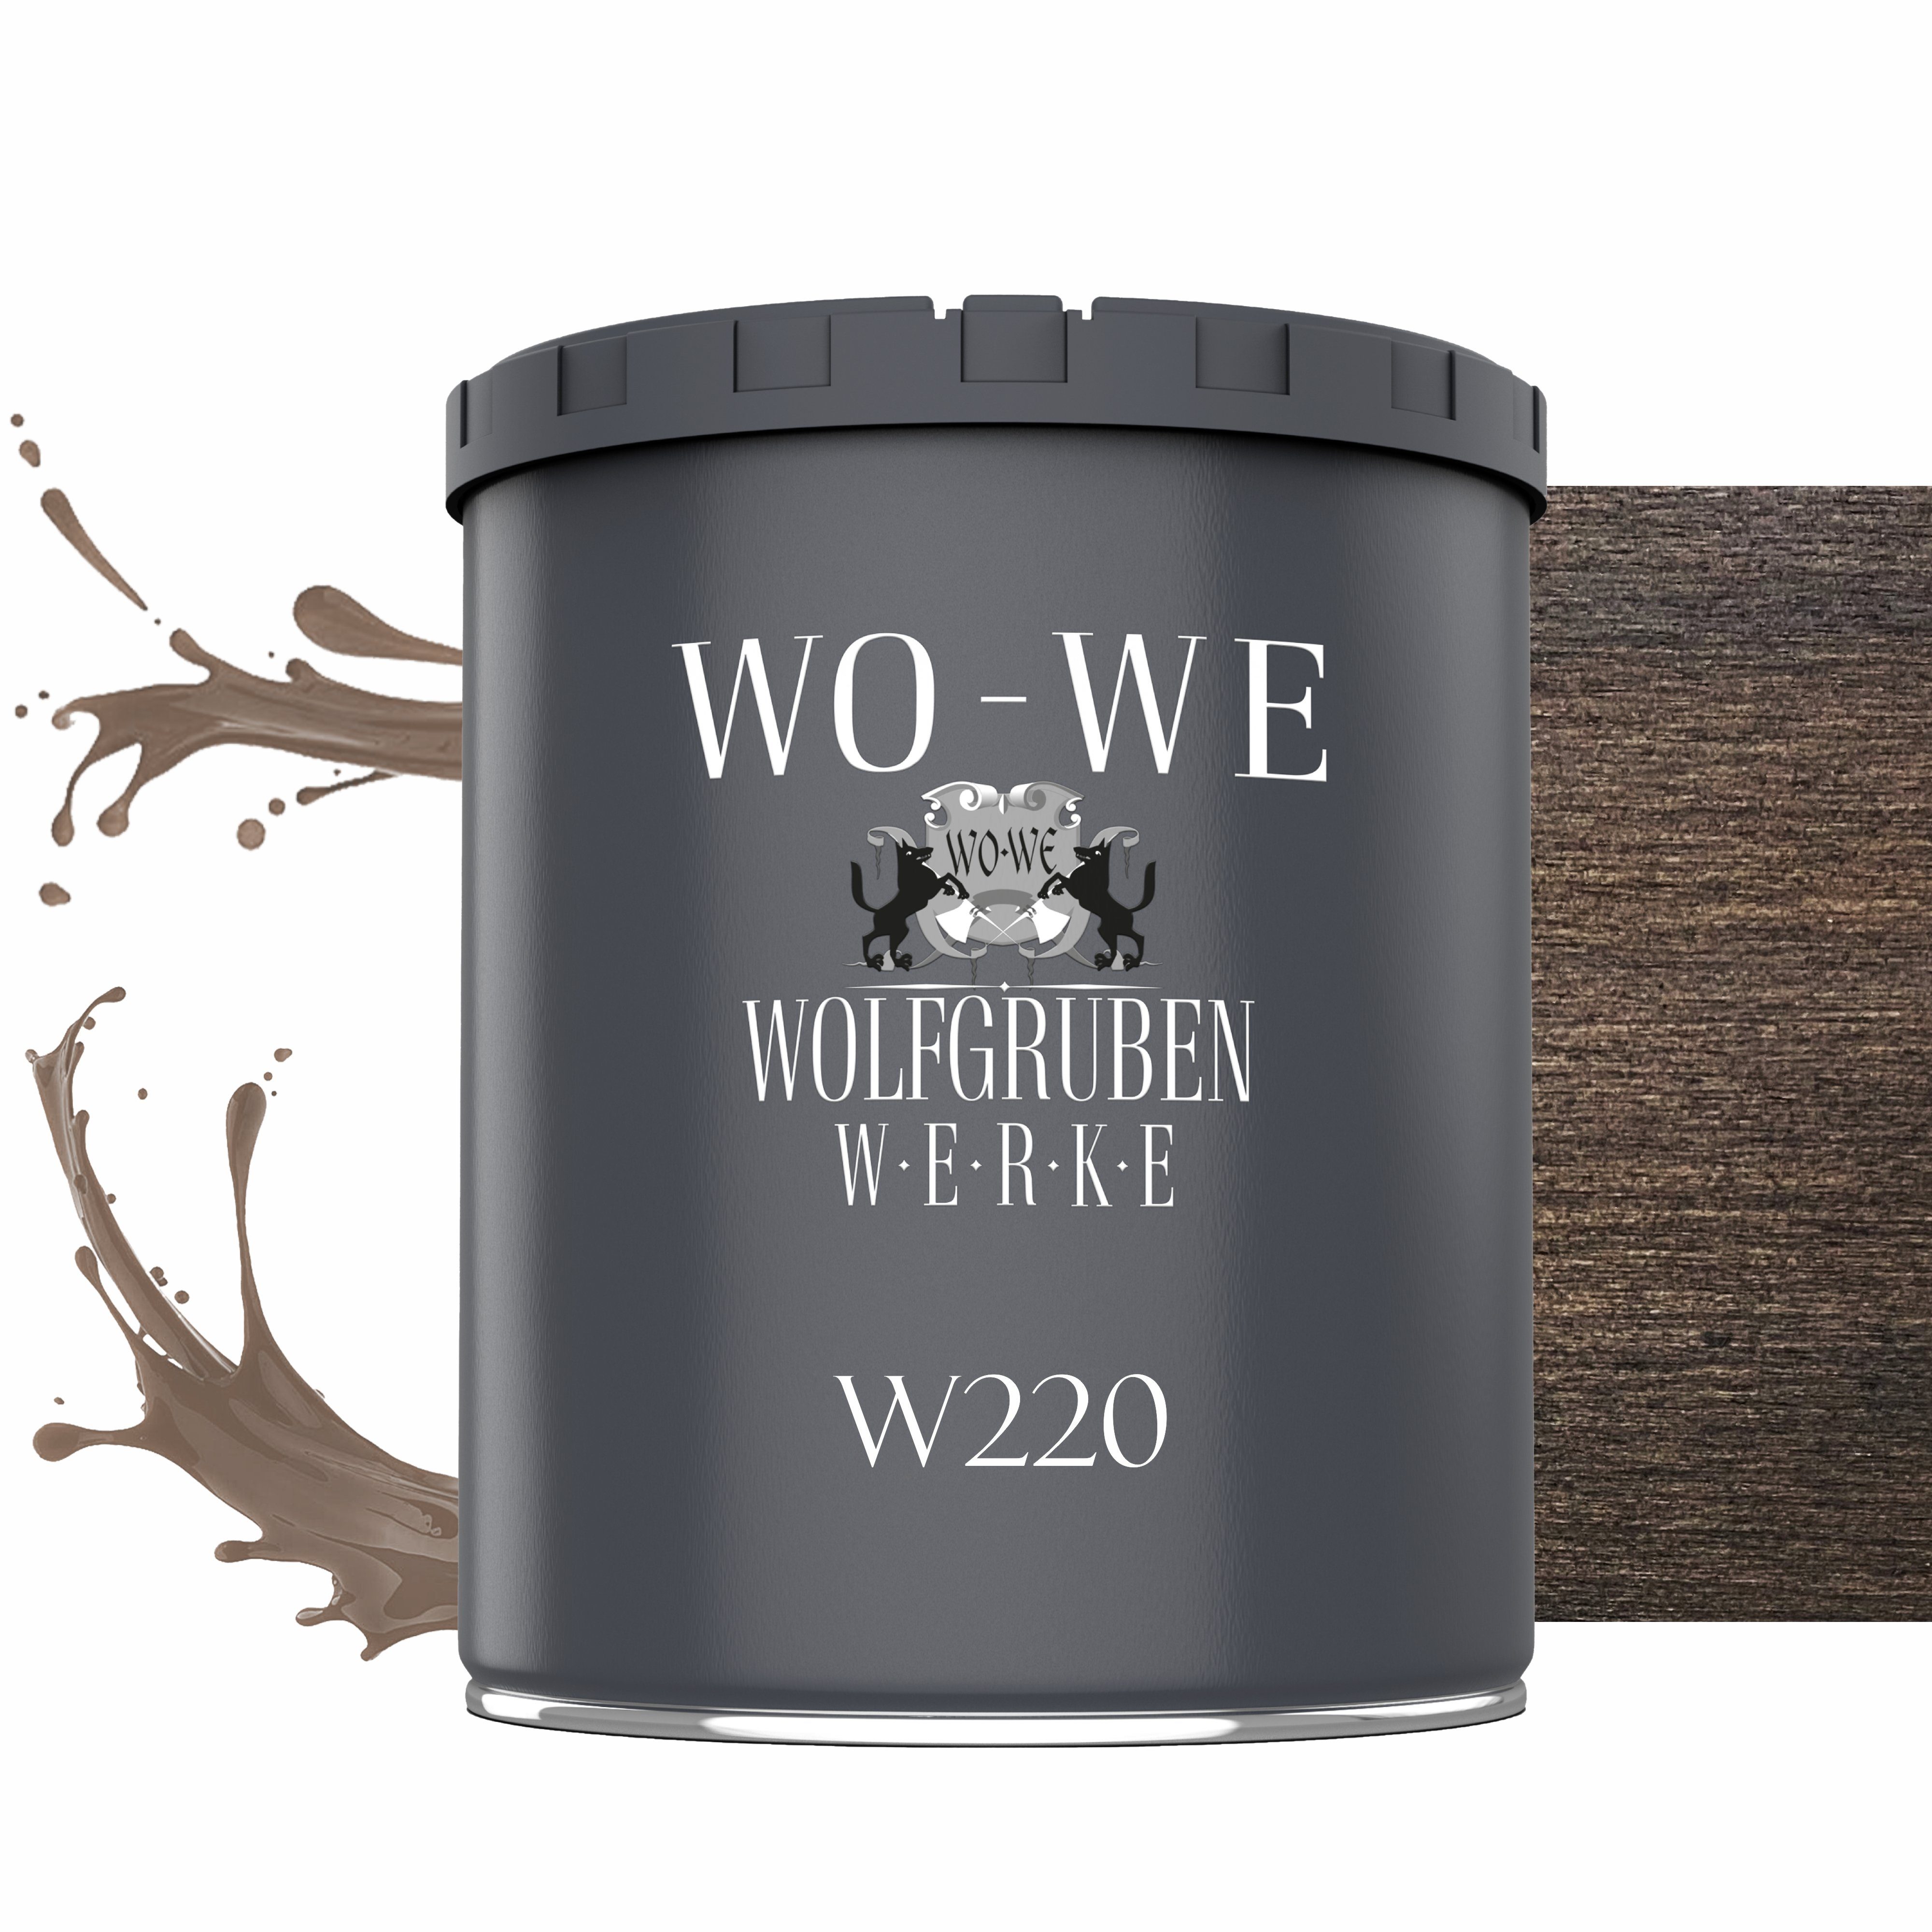 WO-WE Dickschichtlasur Holzschutzlasur 2in1 Holzlasur W220, 1-2,5L, Lösemittelfrei, UV-stabil Nussbaum